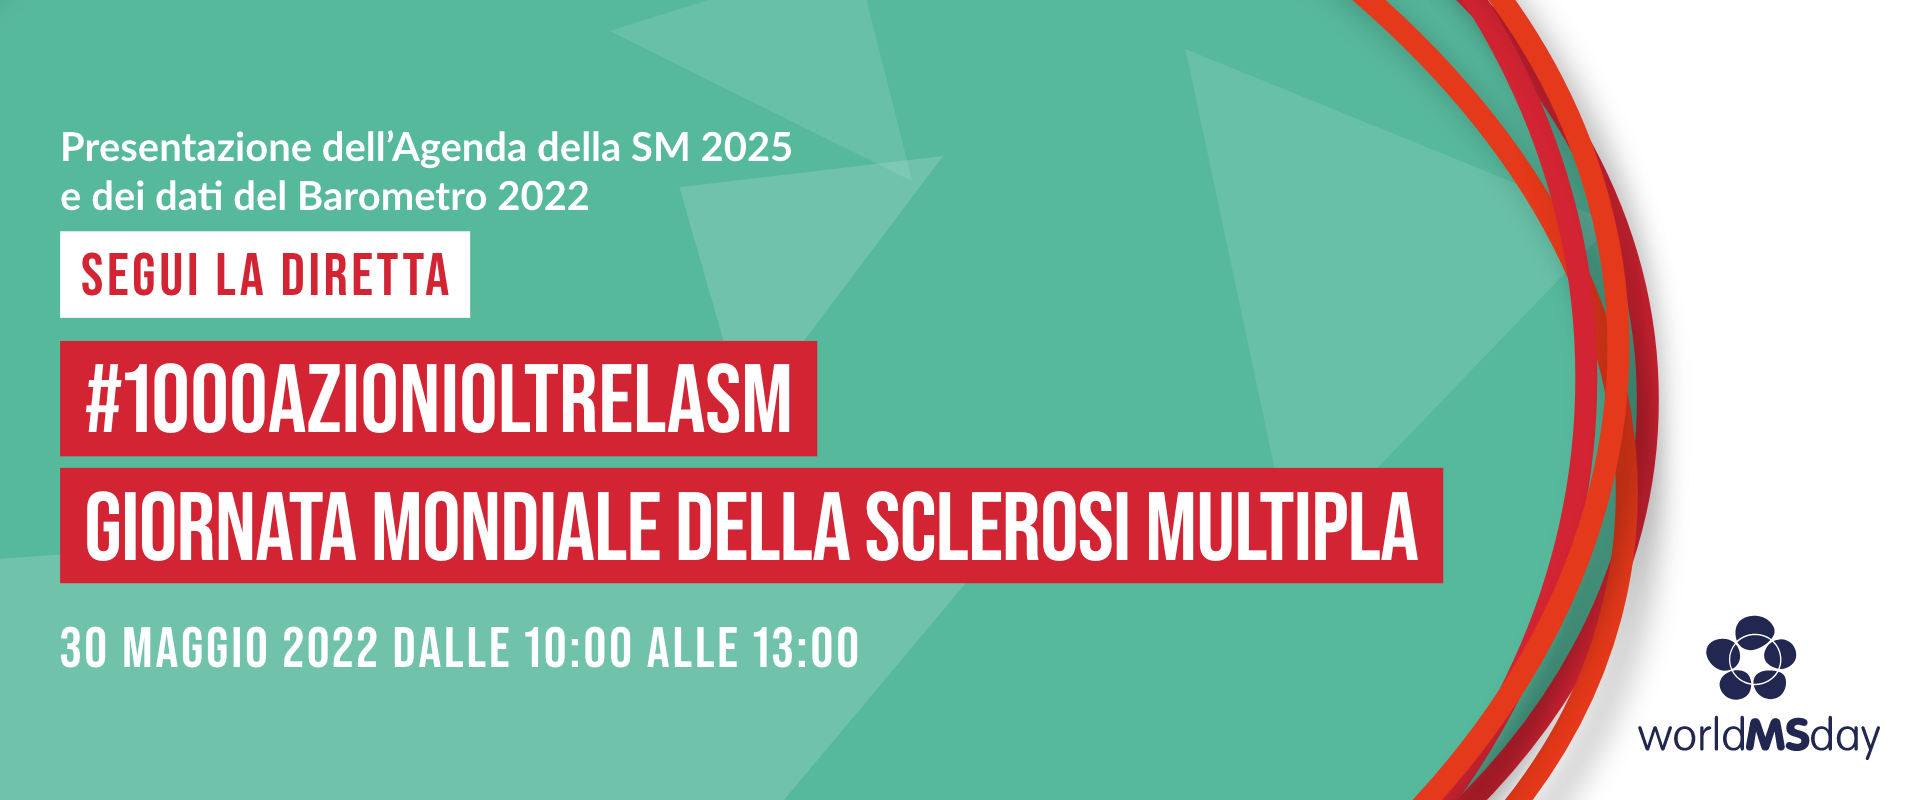 Giornata Mondiale della Sclerosi Multipla: presentazione dell'Agenda della SM 2025 e del Barometro della SM